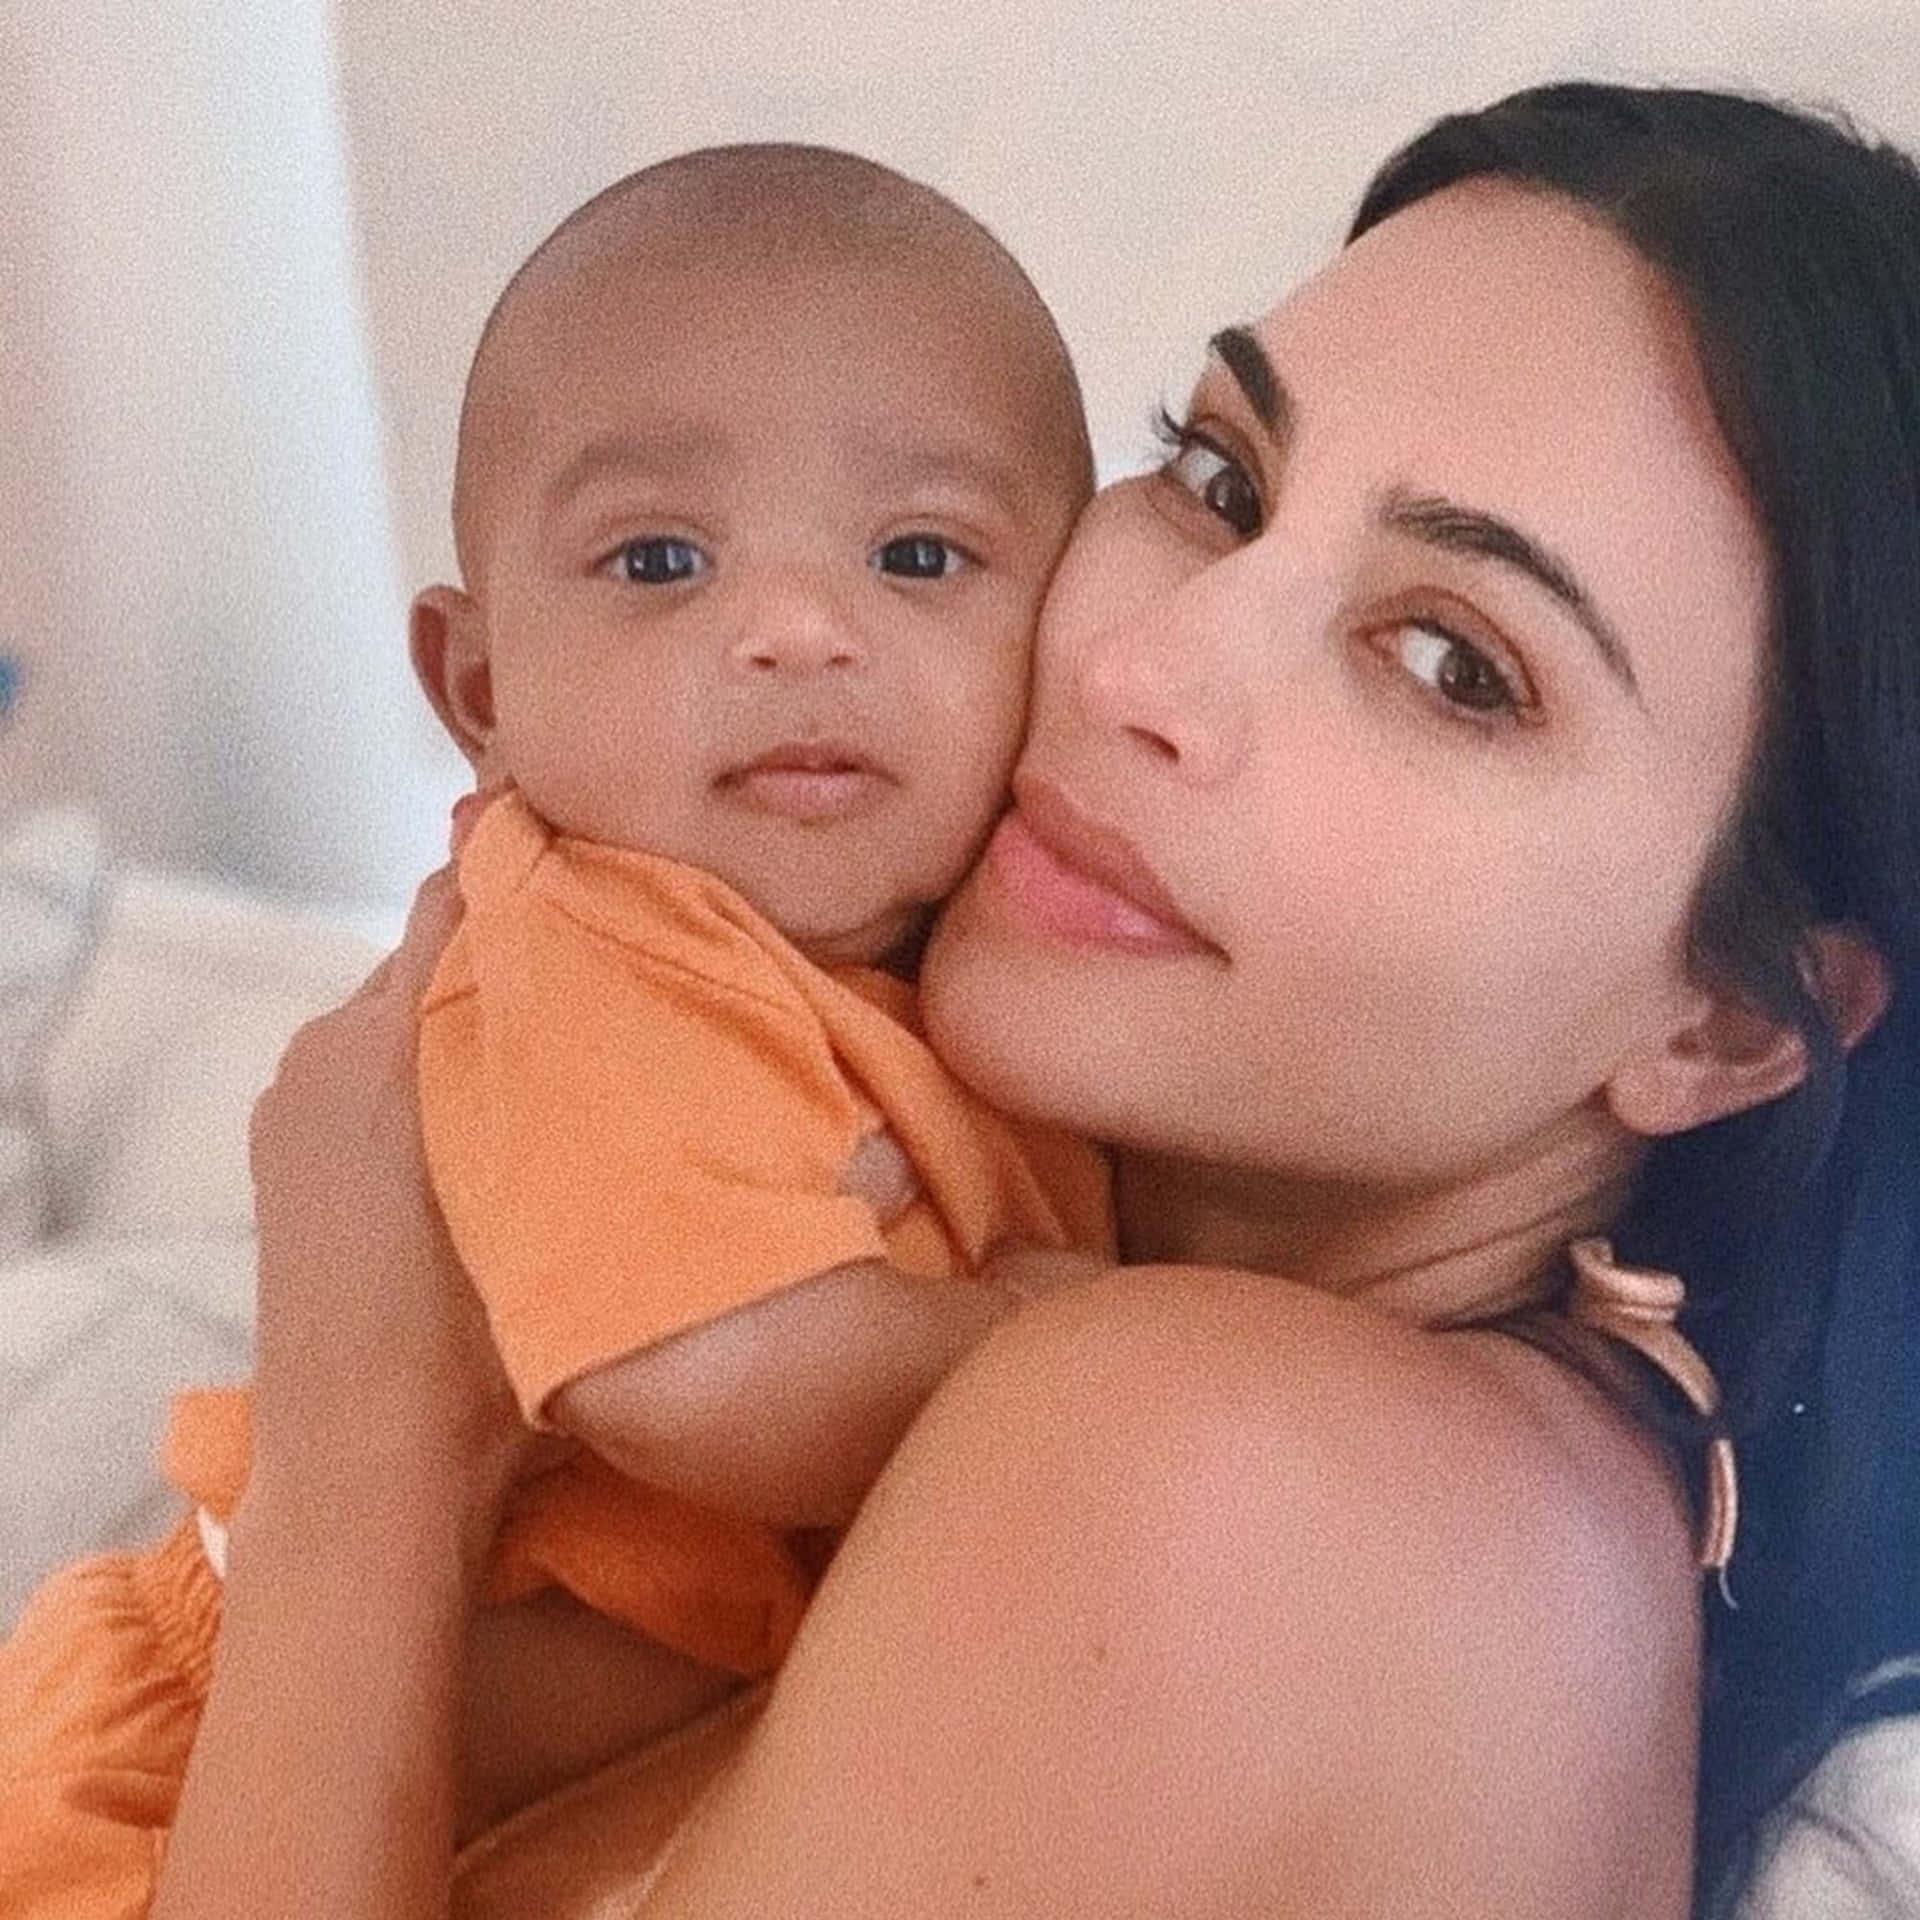 Imagendel Bebé Famoso Kim Kardashian.